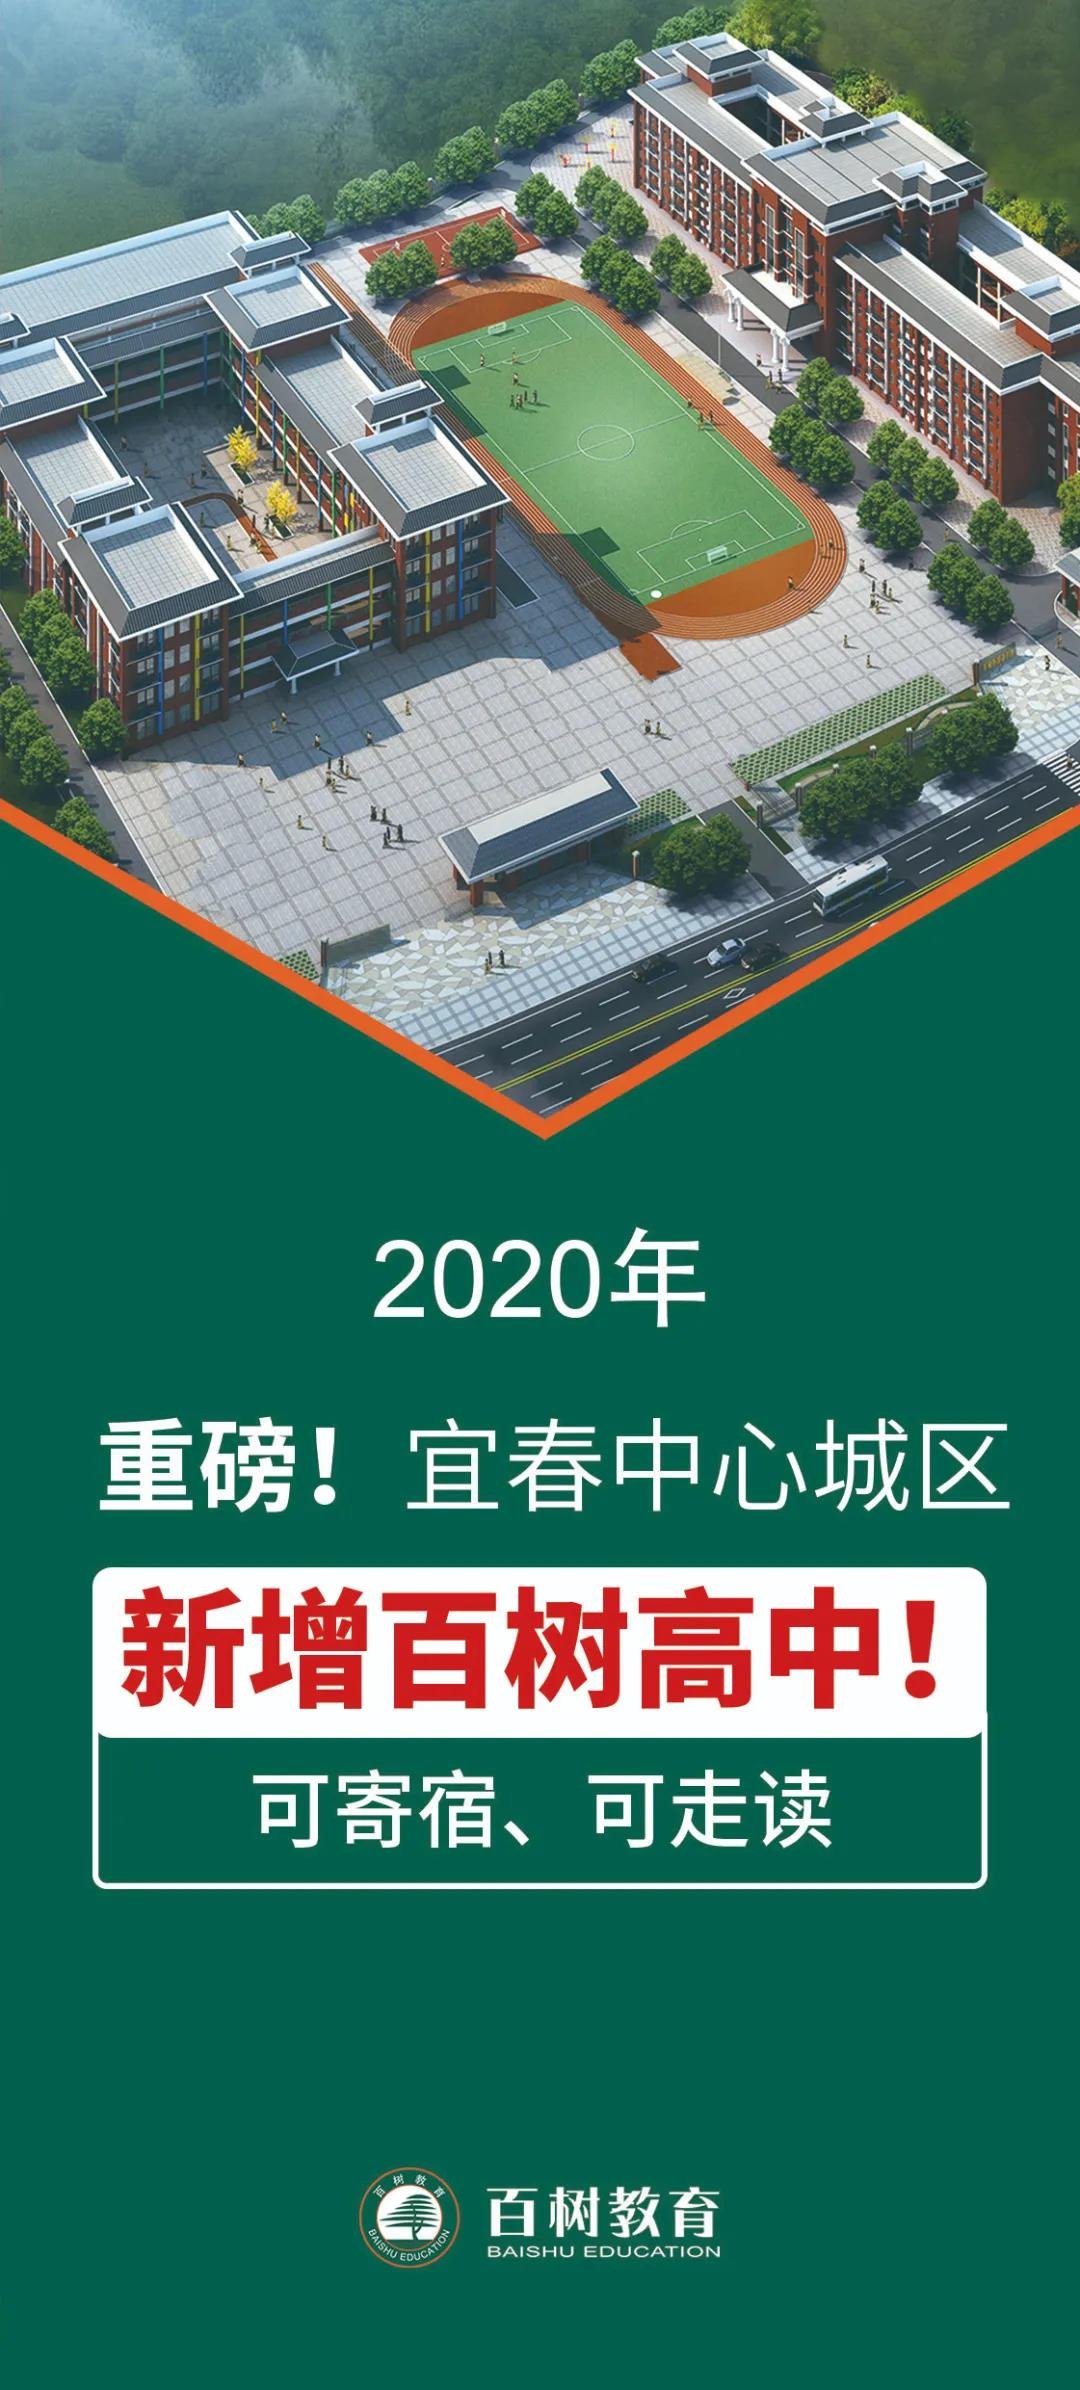 转扩！宜春中心城区新增一所高中！